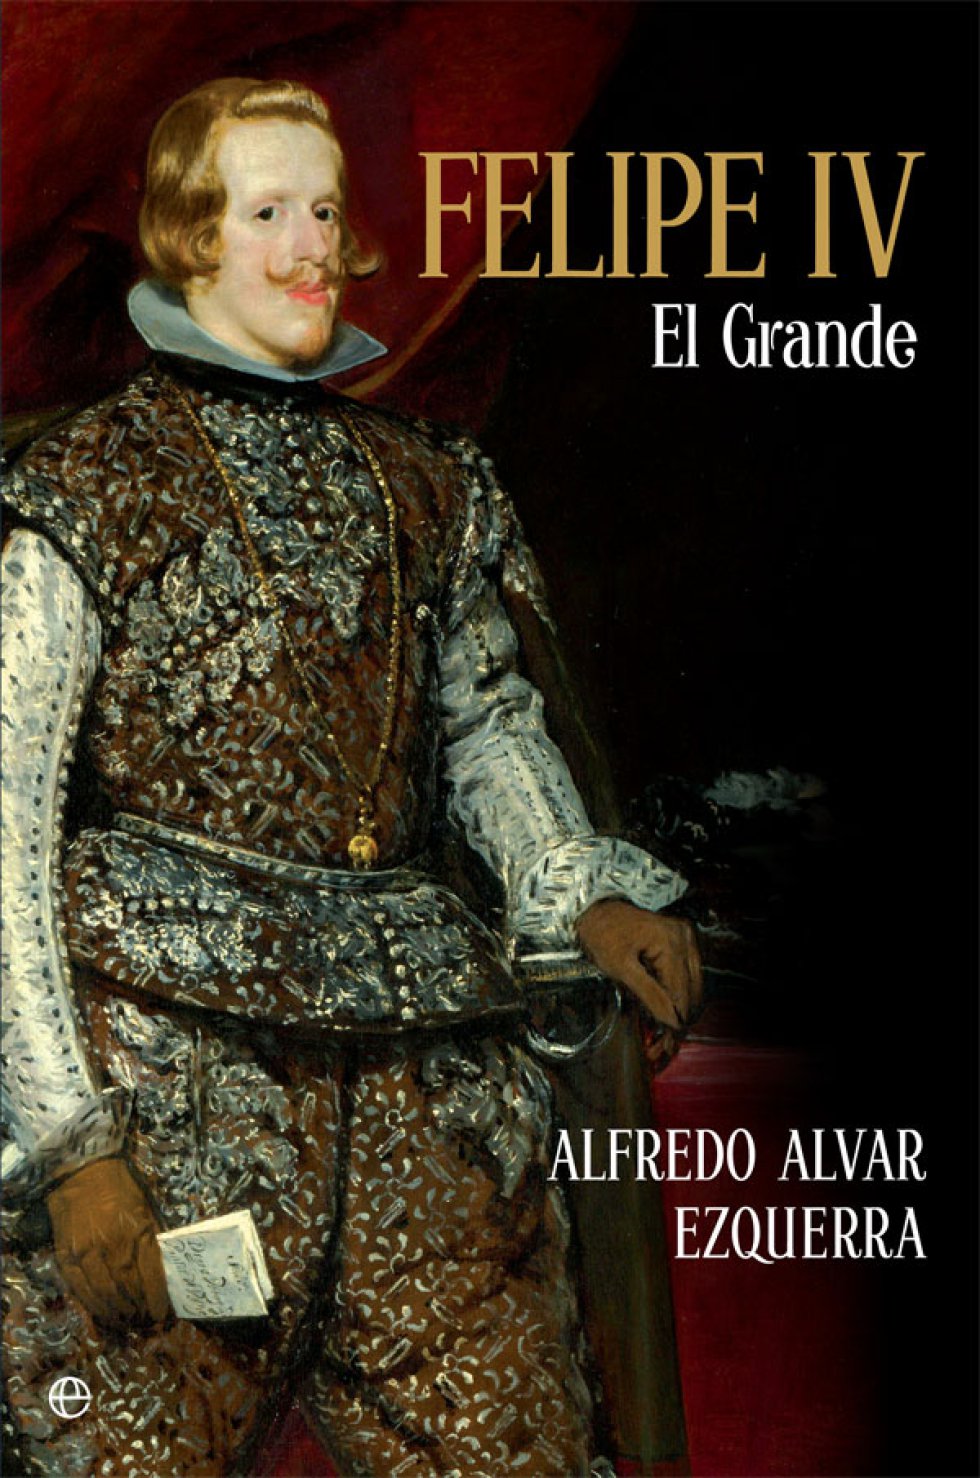 GRANDEZA SIN DECADENCIA. "Alfredo Alvar tiene bien asentado su prestigio como buen conocedor de la historia de la EspaÃ±a de los Austrias, a la que ha dedicado varias obras de consideraciÃ³n, como 'Felipe II, la Corte y Madrid en 1561'; 'El duque de Lerma. CorrupciÃ³n y desmoralizaciÃ³n en la EspaÃ±a del siglo XVII', o 'El embajador imperial Hans KhevenhÃ¼ller (1538-1606) en EspaÃ±a'. Ahora cambia de reinado y nos propone un ensayo biogrÃ¡fico sobre Felipe IV, del que justifica su sobrenombre cortesano del Grande, por mucho que su reinado estuviese atravesado por graves calamidades econÃ³micas (terribles hambrunas y epidemias de mediados de siglo), financieras (aparatosas suspensiones de pagos), polÃ­ticas (revueltas de CataluÃ±a, Portugal, NÃ¡poles y Sicilia) e internacionales, con severas derrotas militares (Rocroi, Gravelinas) y enormes pÃ©rdidas territoriales en Europa y en AmÃ©rica. Lo que dio lugar a que su presunta grandeza fuera comparada (a partir de unos versos atribuidos con dudoso fundamento a Francisco de Quevedo) con la de los hoyos, que son mayores cuanta mÃ¡s tierra pierden". Por CARLOS MARTÃNEZ SHAW